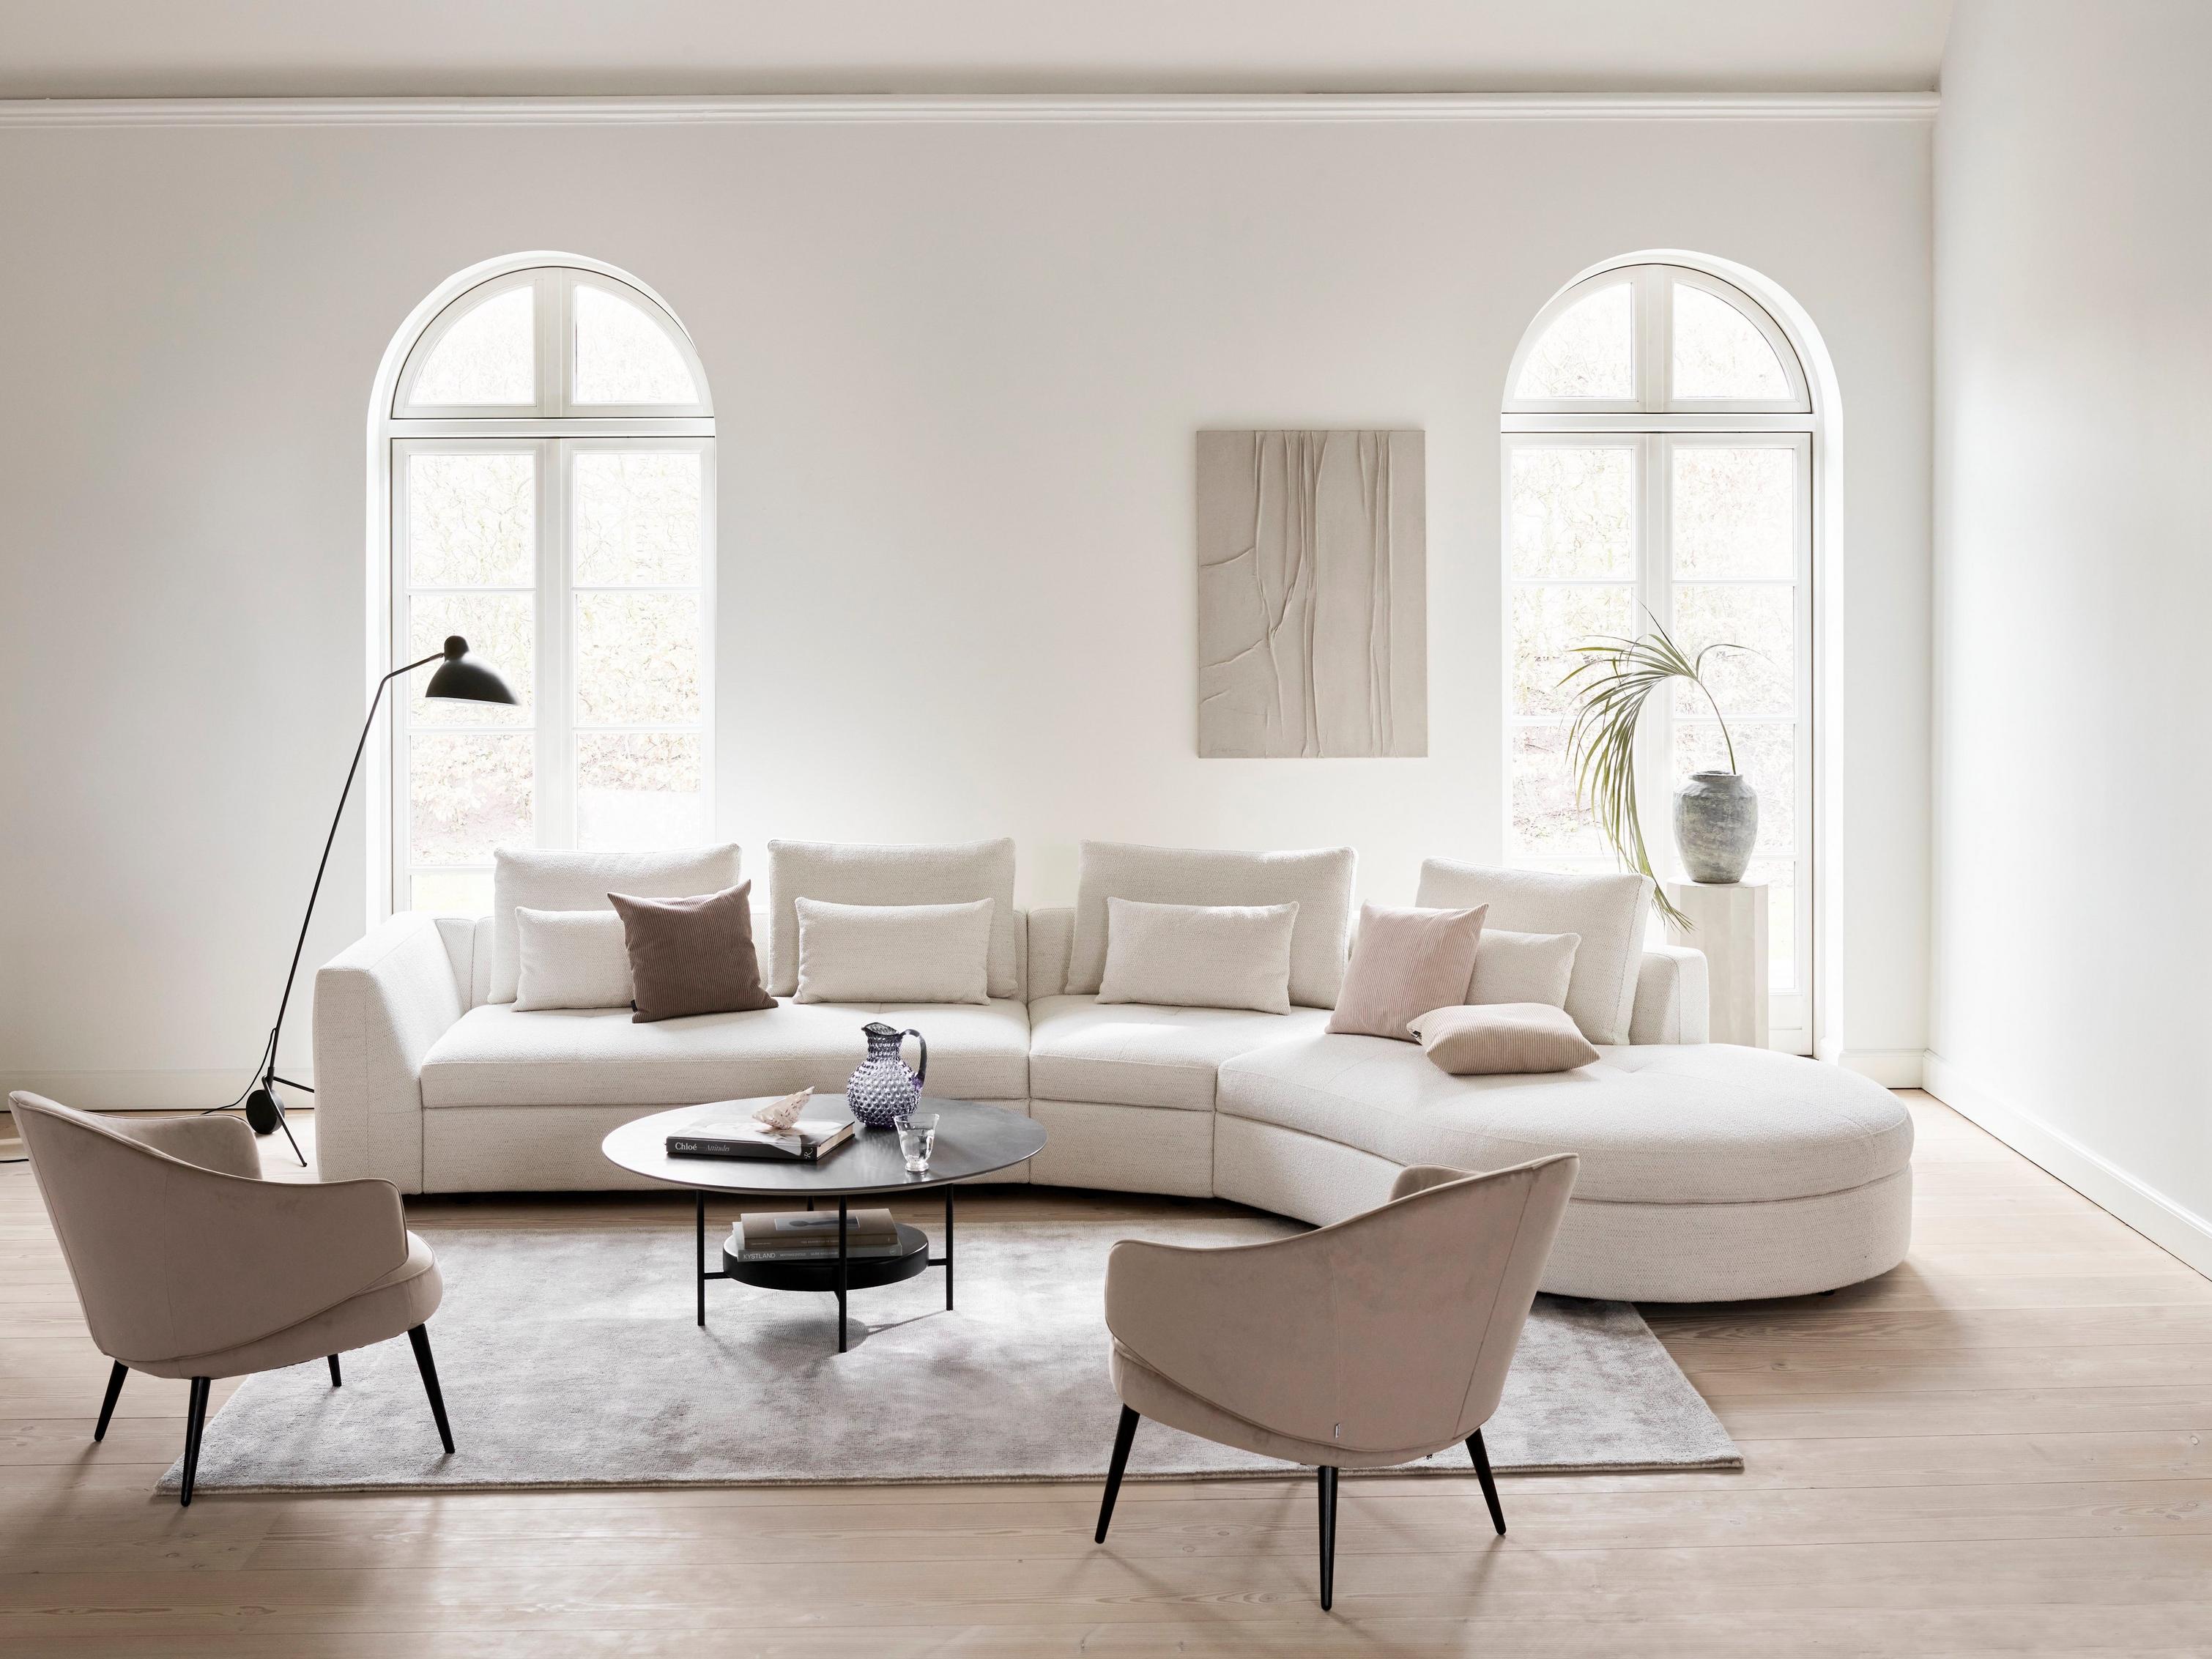 Bergamo 沙發搭配 Lazio 布料的圓形躺椅，以及採深色大理石陶瓷塗層的 Madrid 咖啡桌。